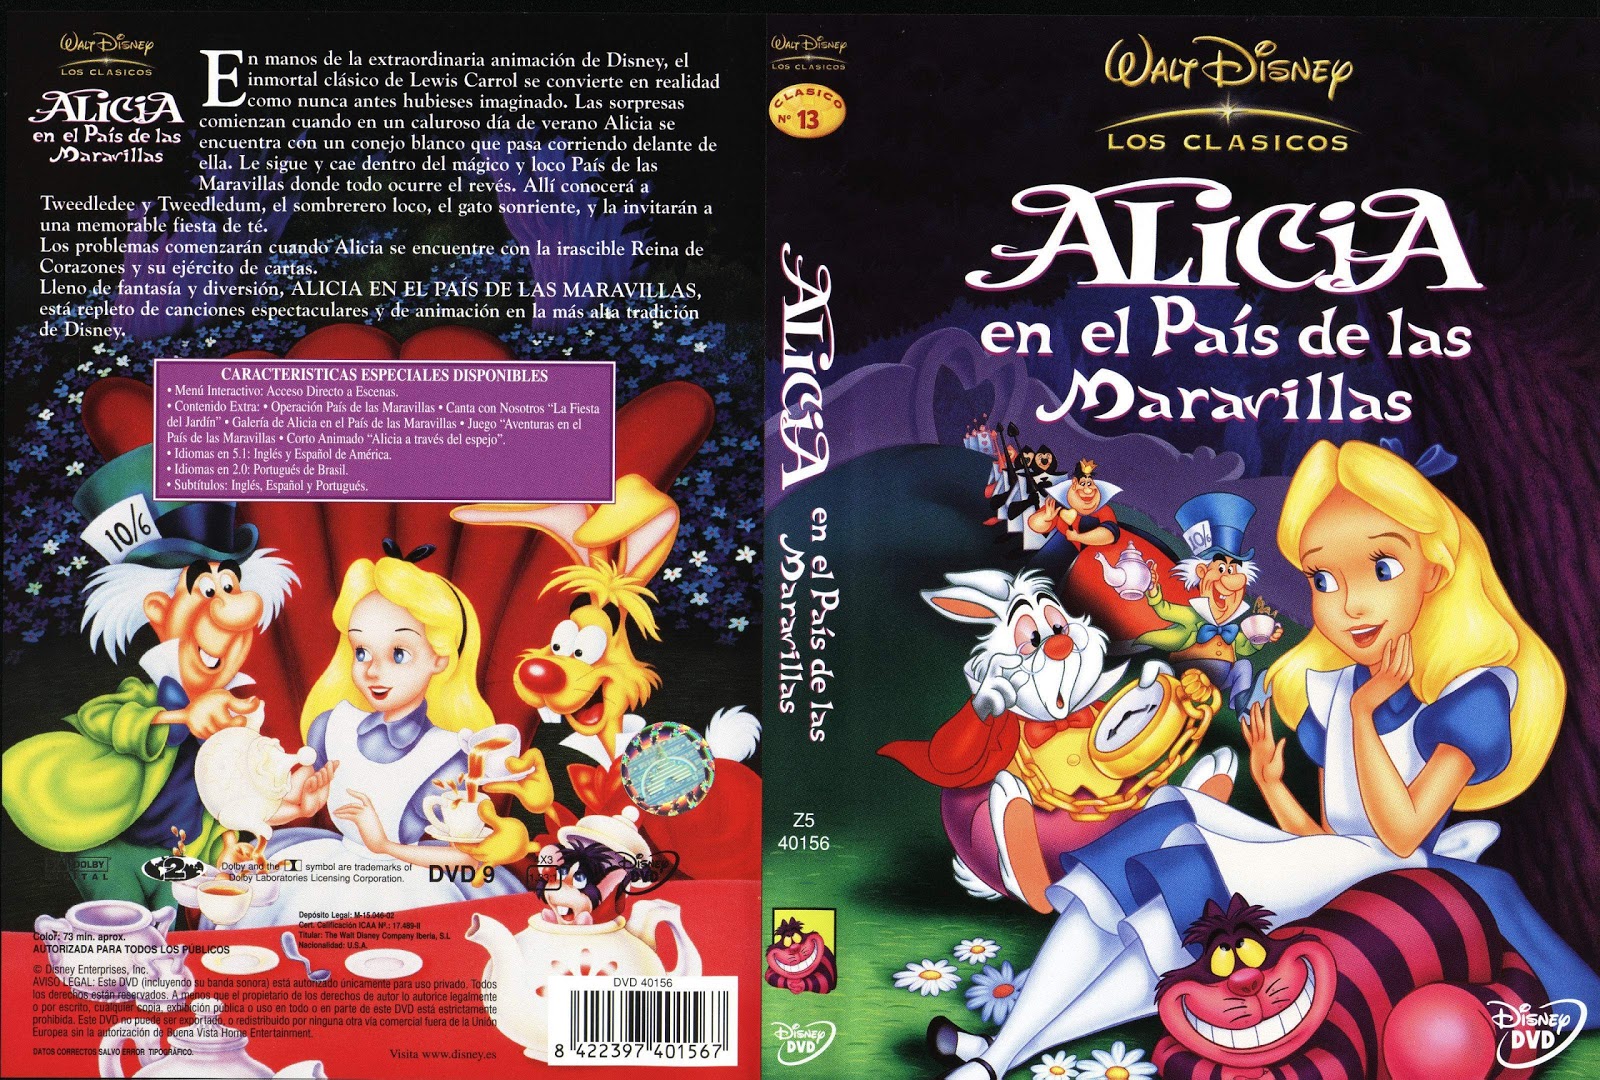 Alicia en el País de las Maravillas (The Walt Disney Company Iberia)